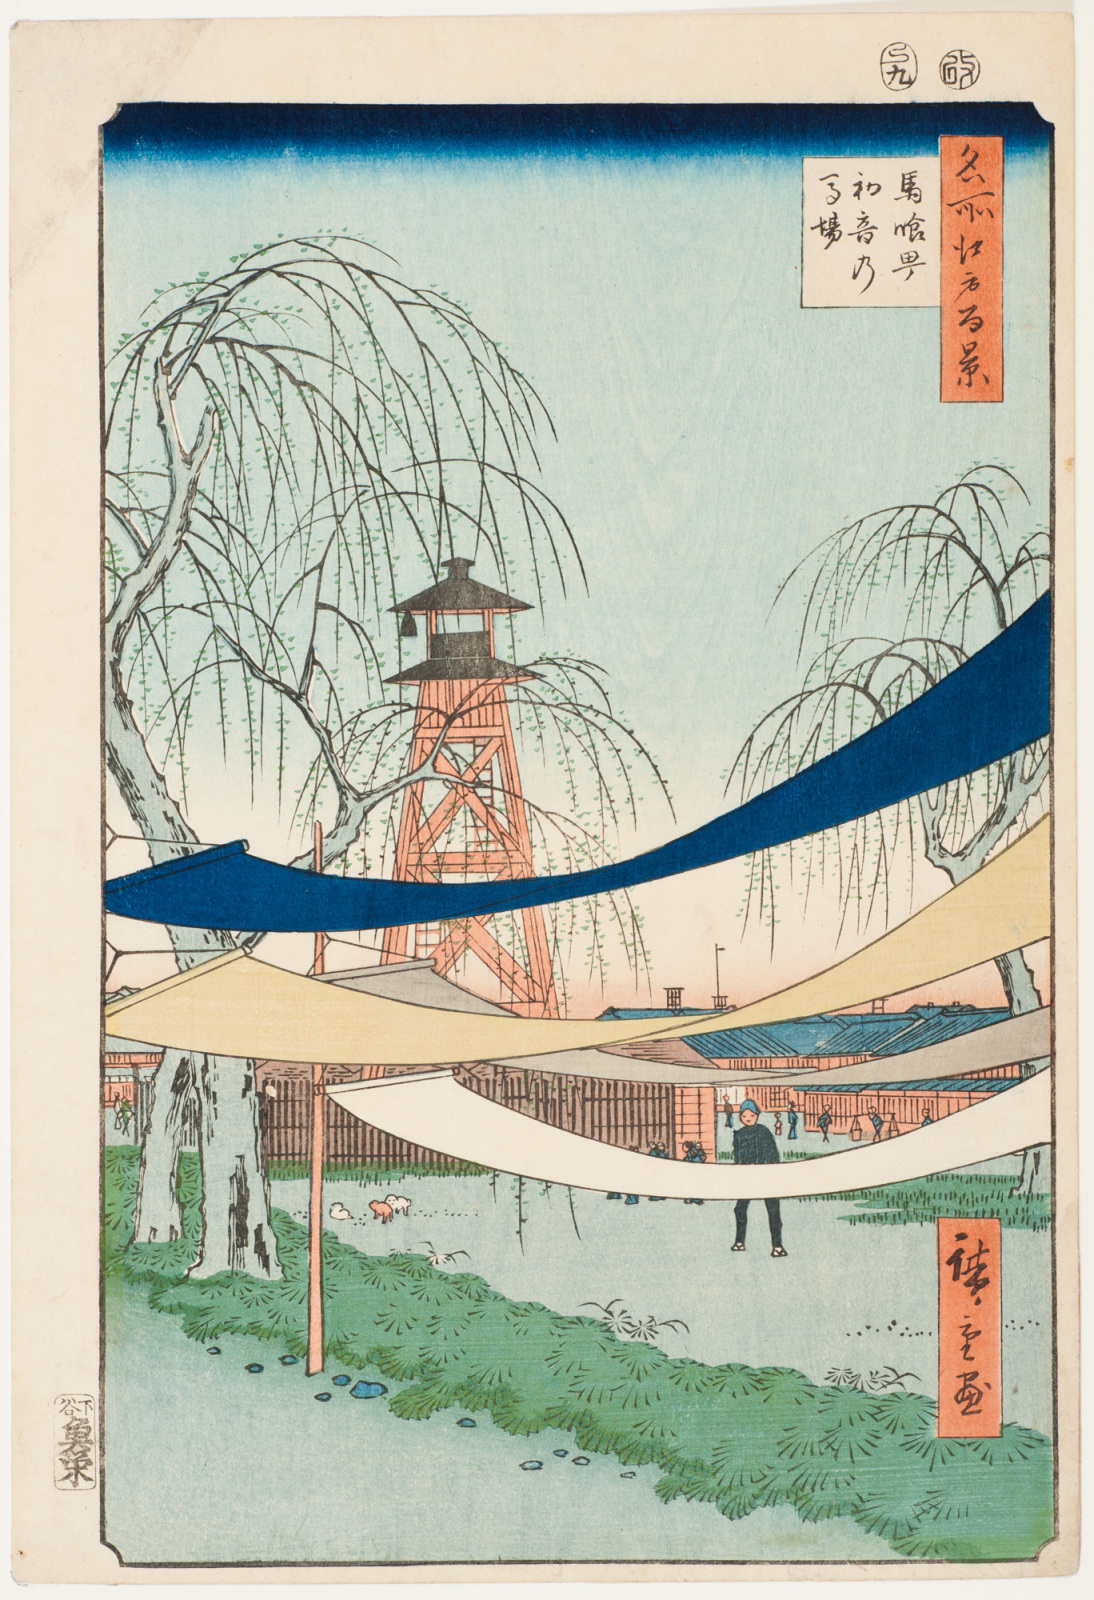 Hatsune lovaglótér by  Hiroshige - 1856 - 34 × 22,9 